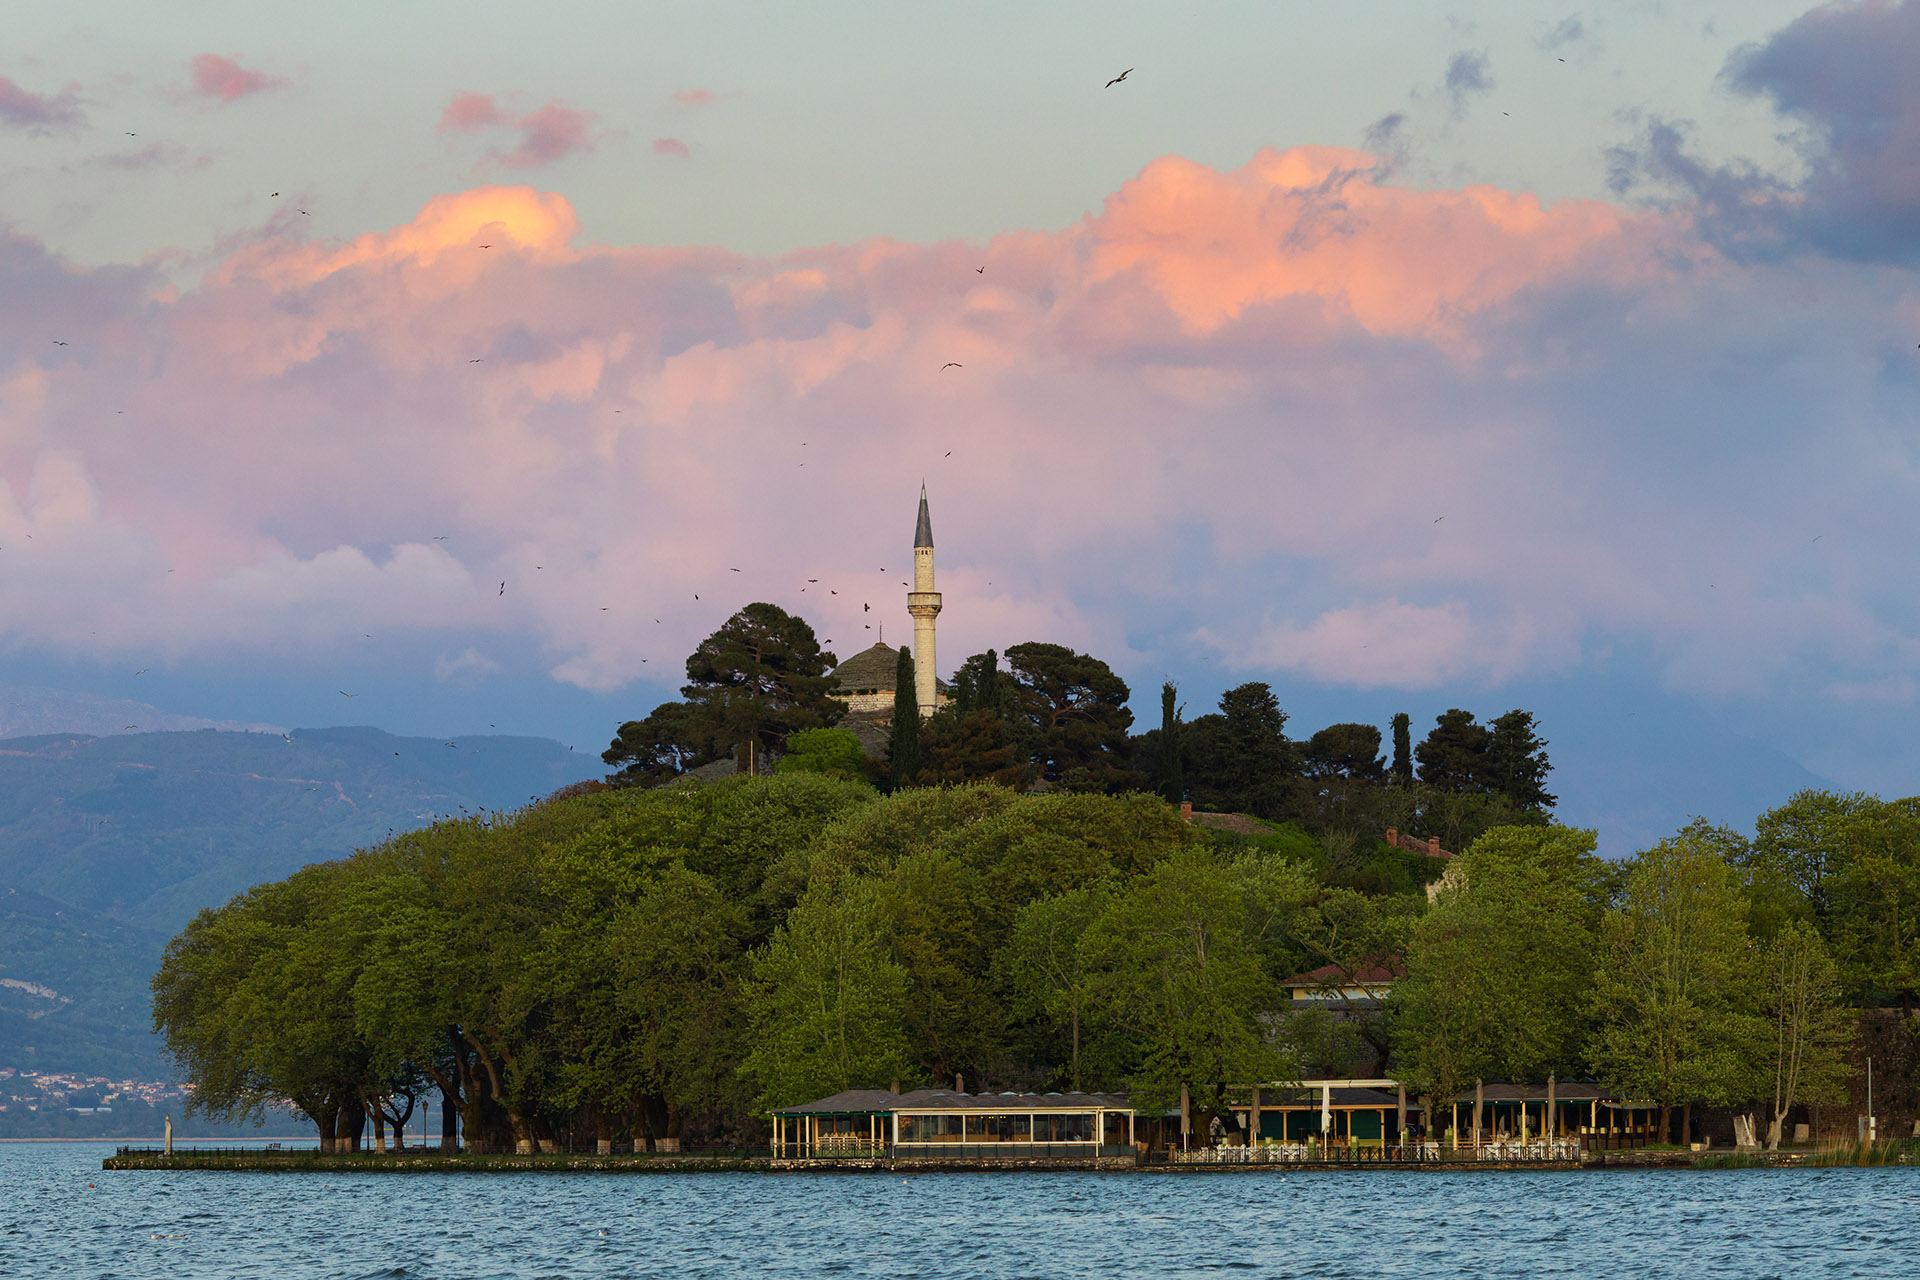 The Lake of Ioannina